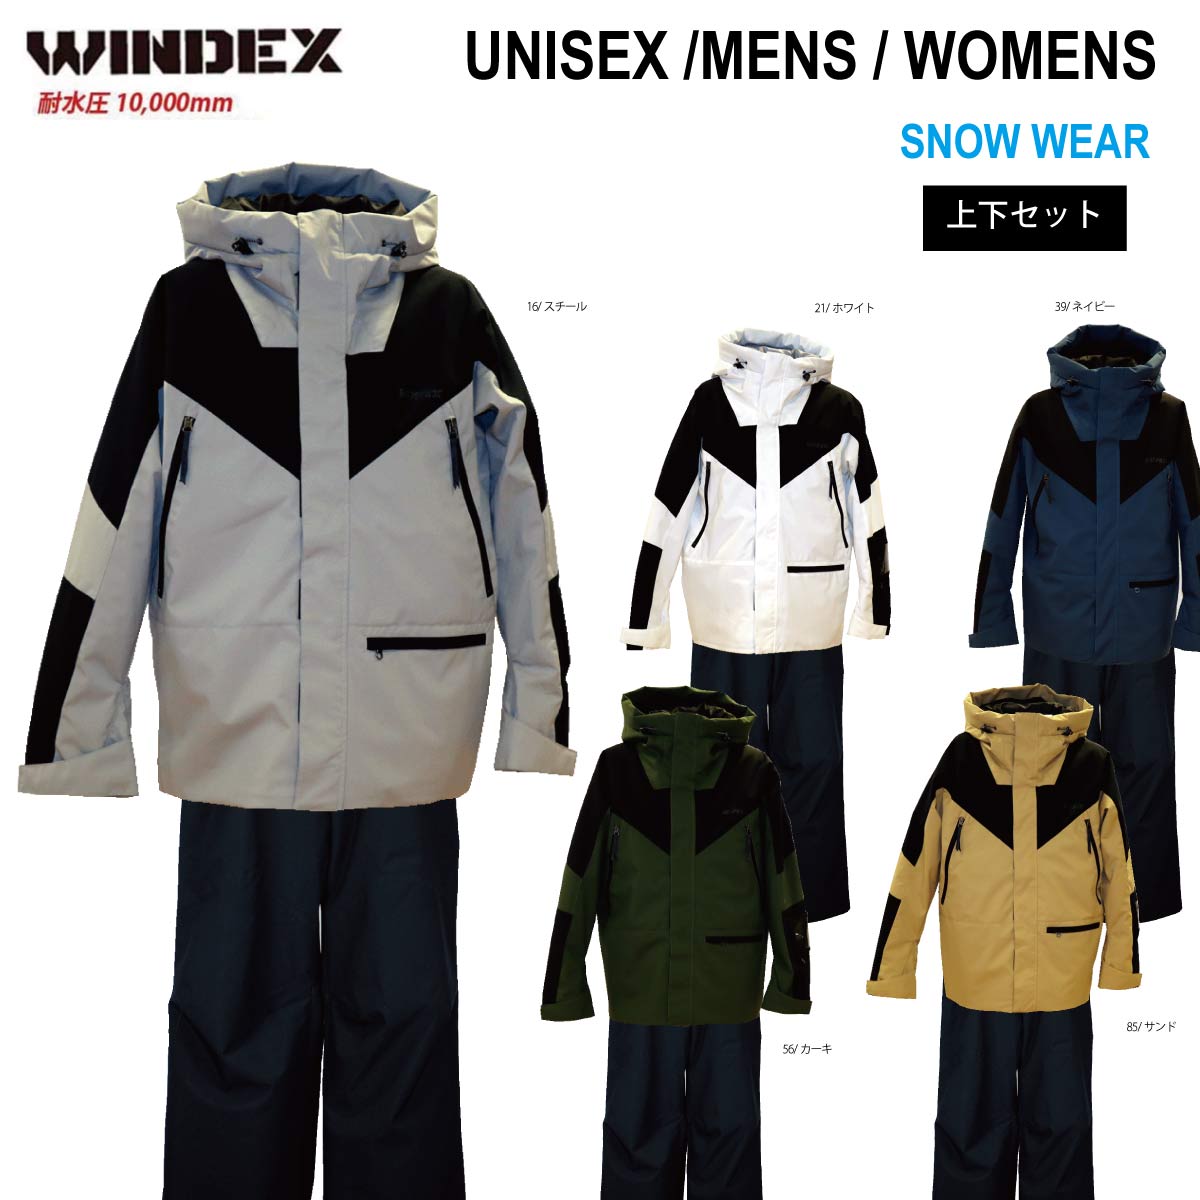 WINDEX(ウィンデックス) WS-6802 メンズ レディース スキースーツ スキーウェア 上下セット 耐水圧10000mm